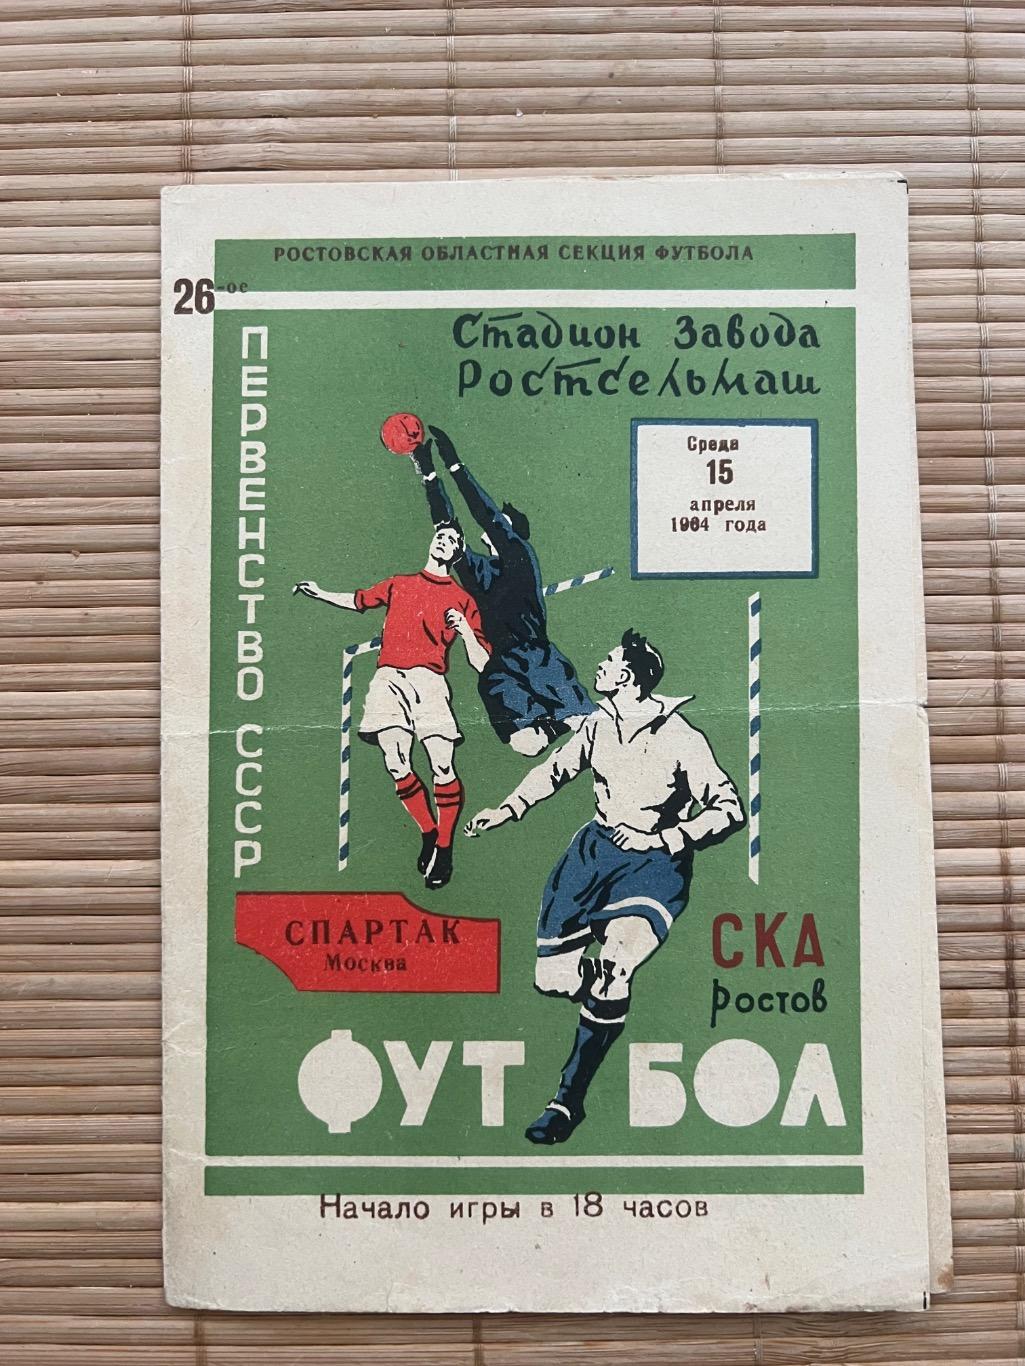 СКА Ростов - Спартак Москва 1964